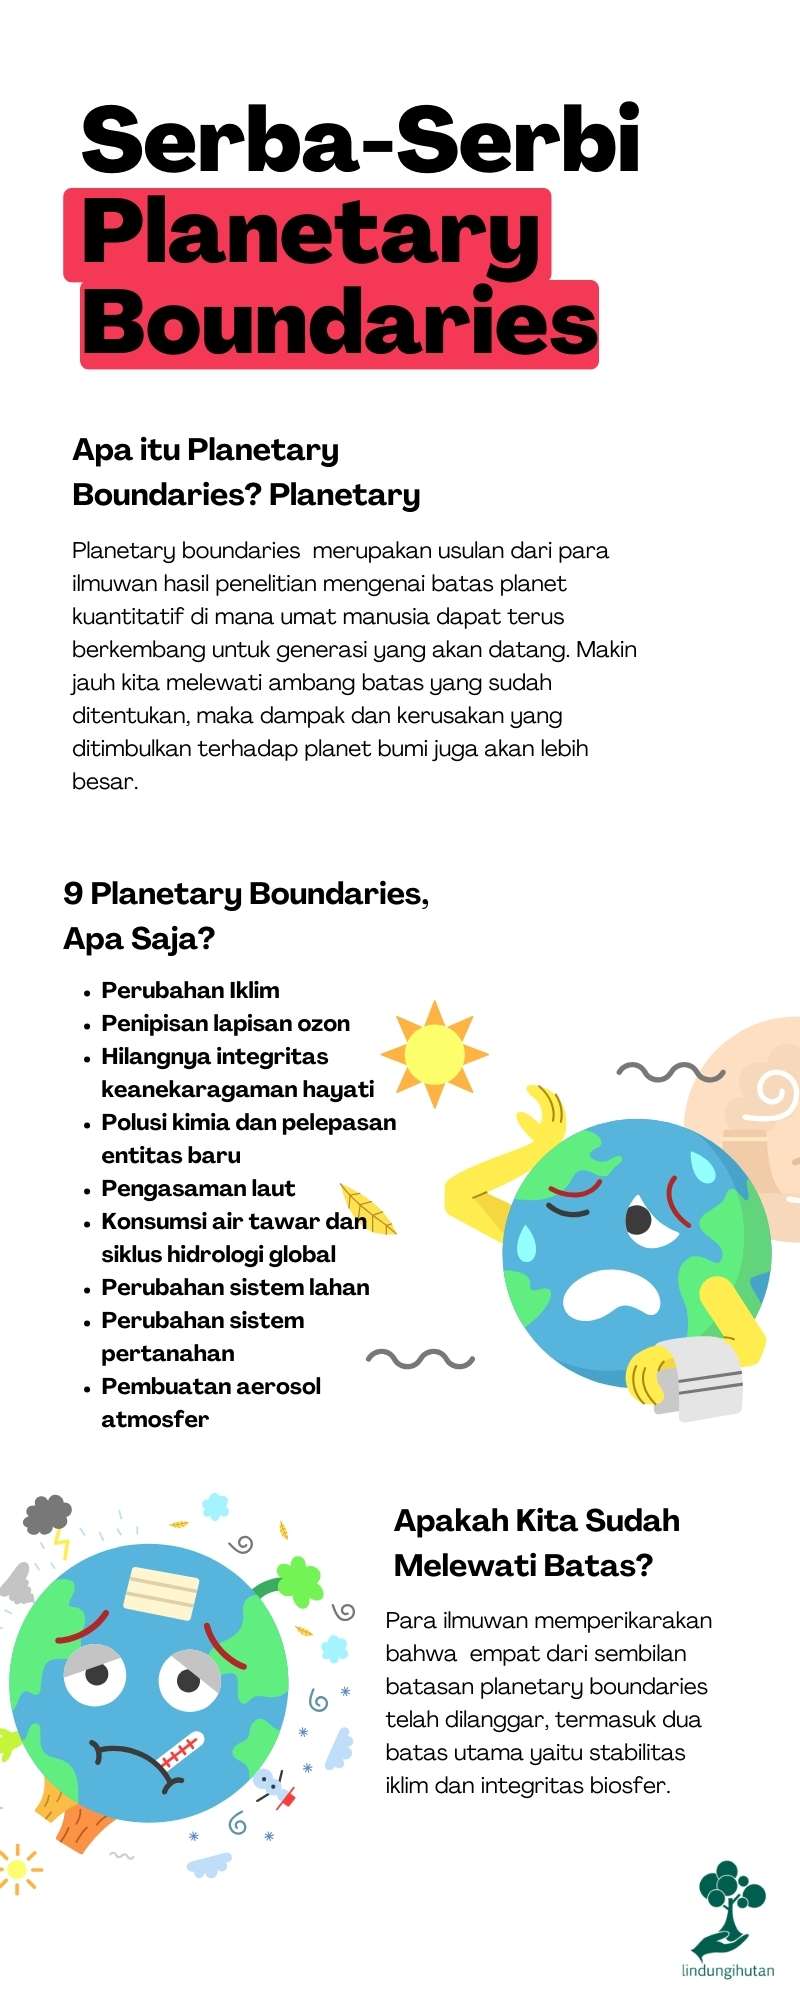 Planetary boundaries